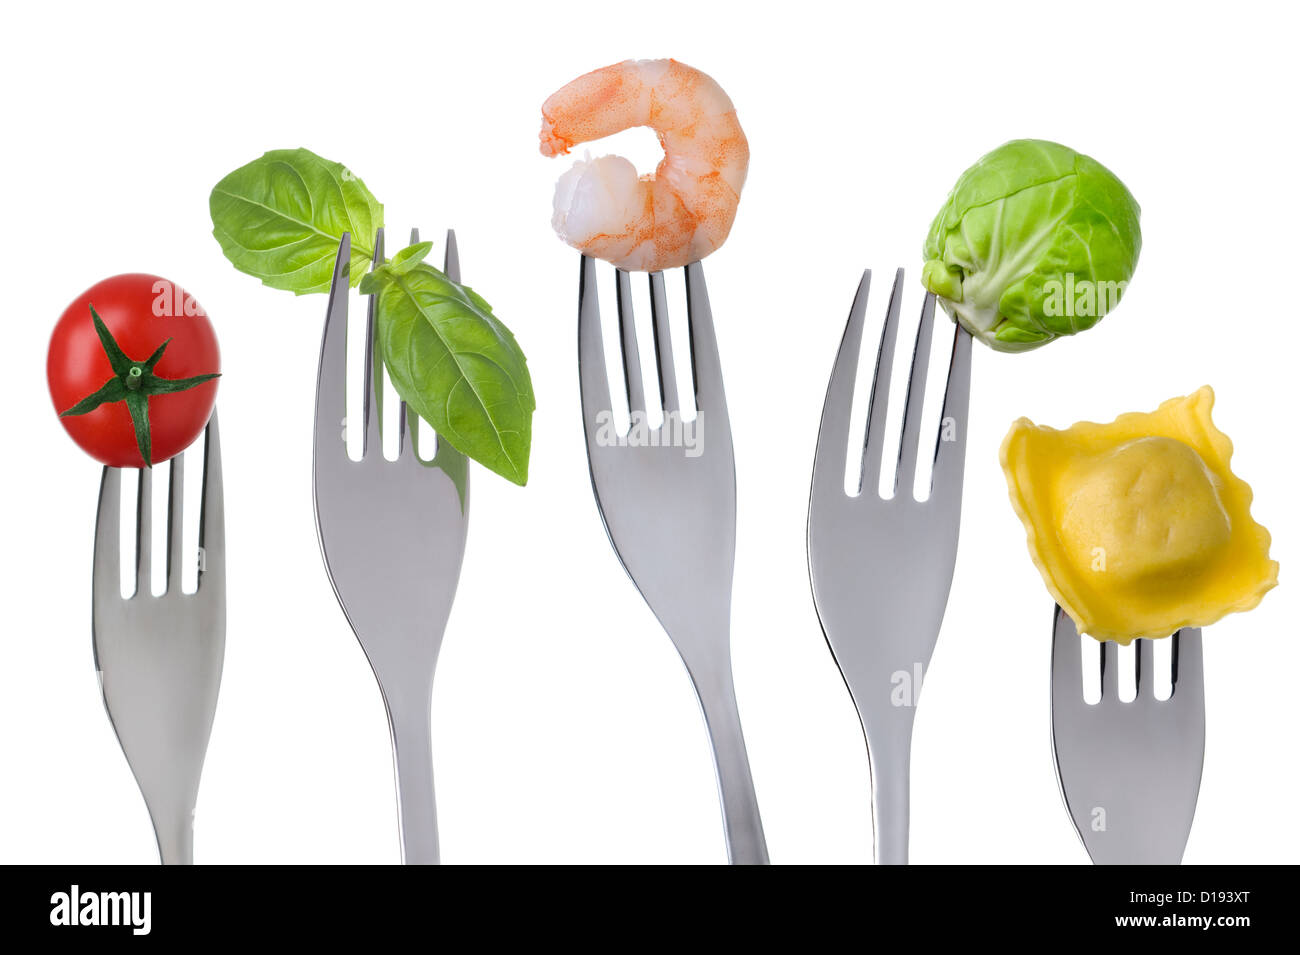 Gruppen von gesunden Lebensmitteln für eine ausgewogene Ernährung Protein-Kohlenhydrat-Obst und Gemüse. Ernährungskonzept. Stockfoto